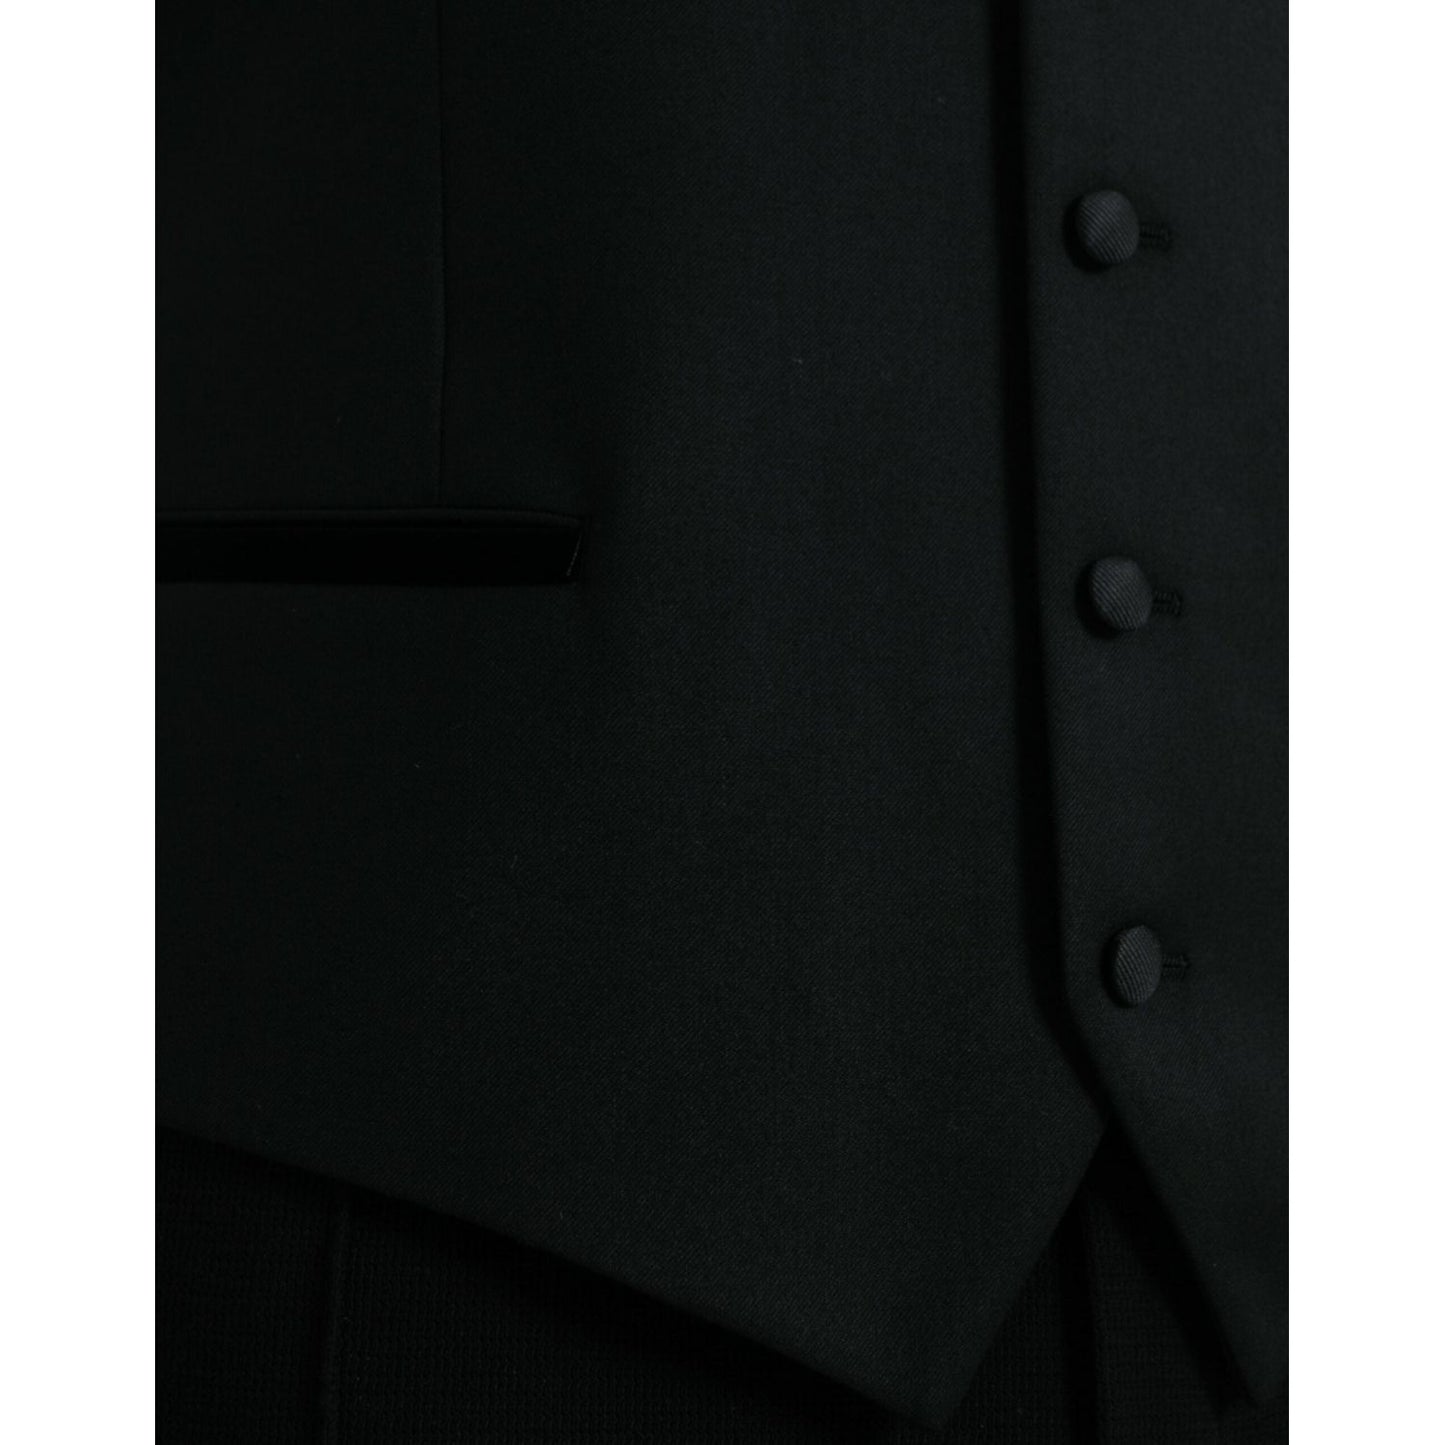 Dolce & Gabbana Black Silk Waistcoat Dress Formal Vest black-silk-waistcoat-dress-formal-vest